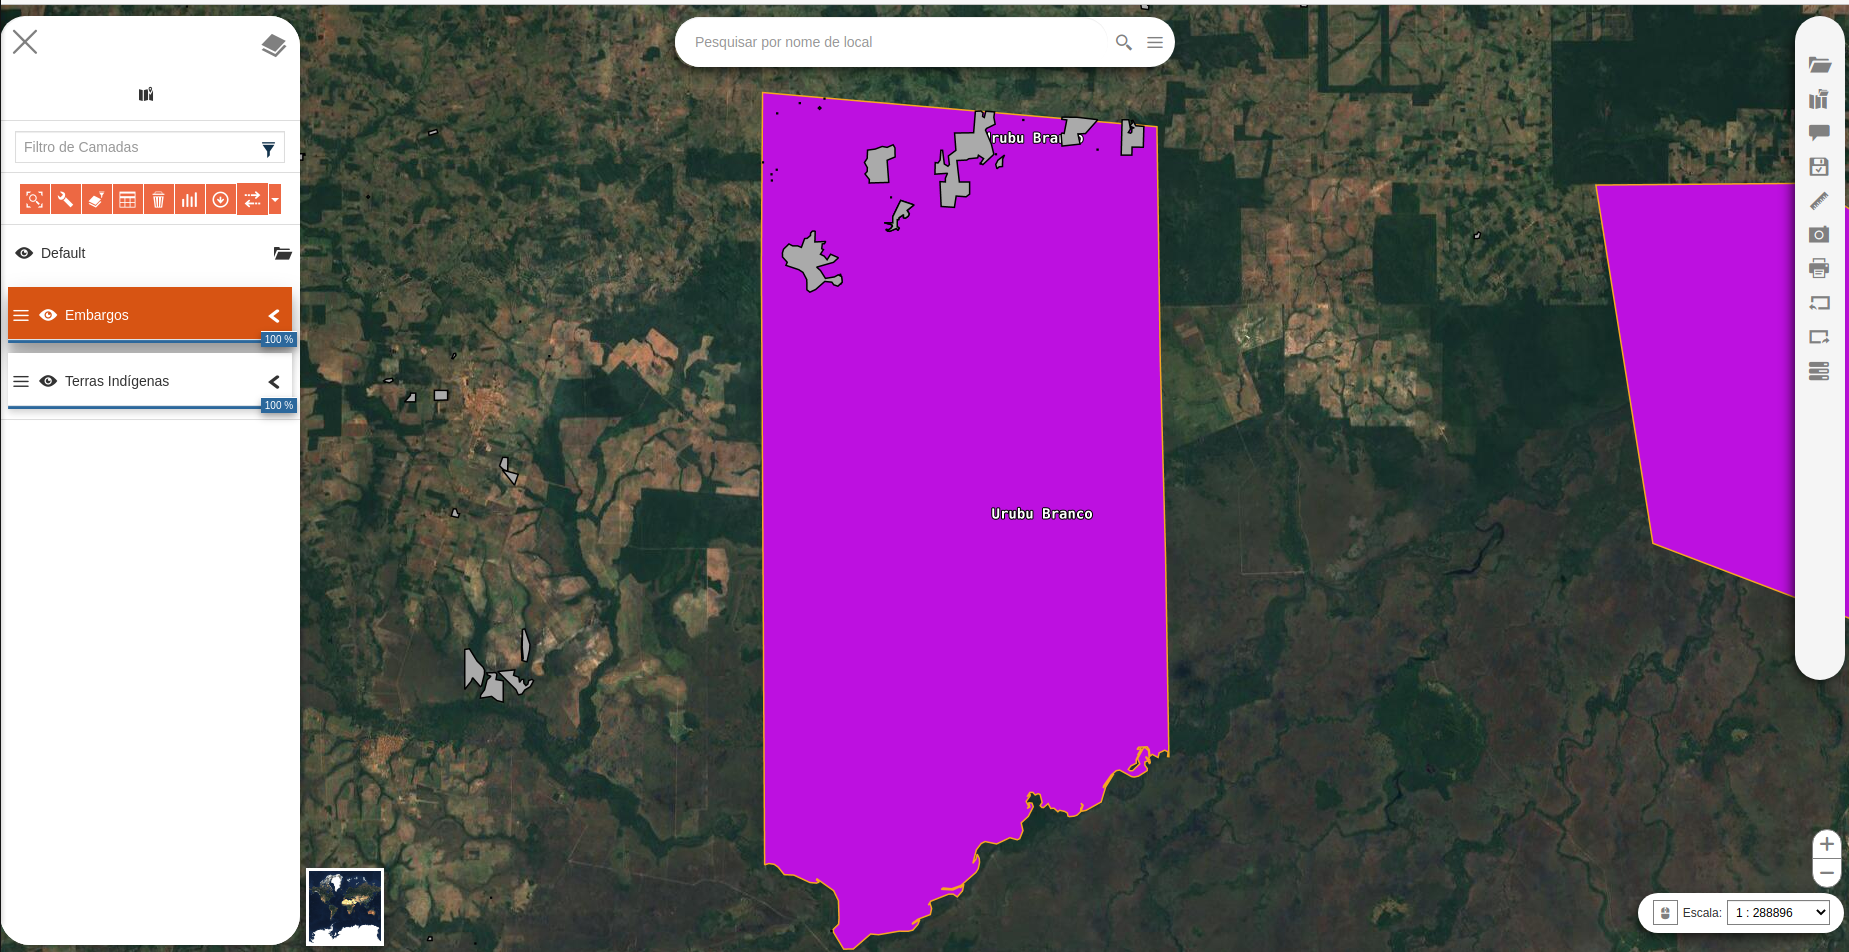 Detalhe do cruzamento das bases de dados de terras indígenas e embargos do Ibama. Os pontos que aparecem no mapa representam os embargos